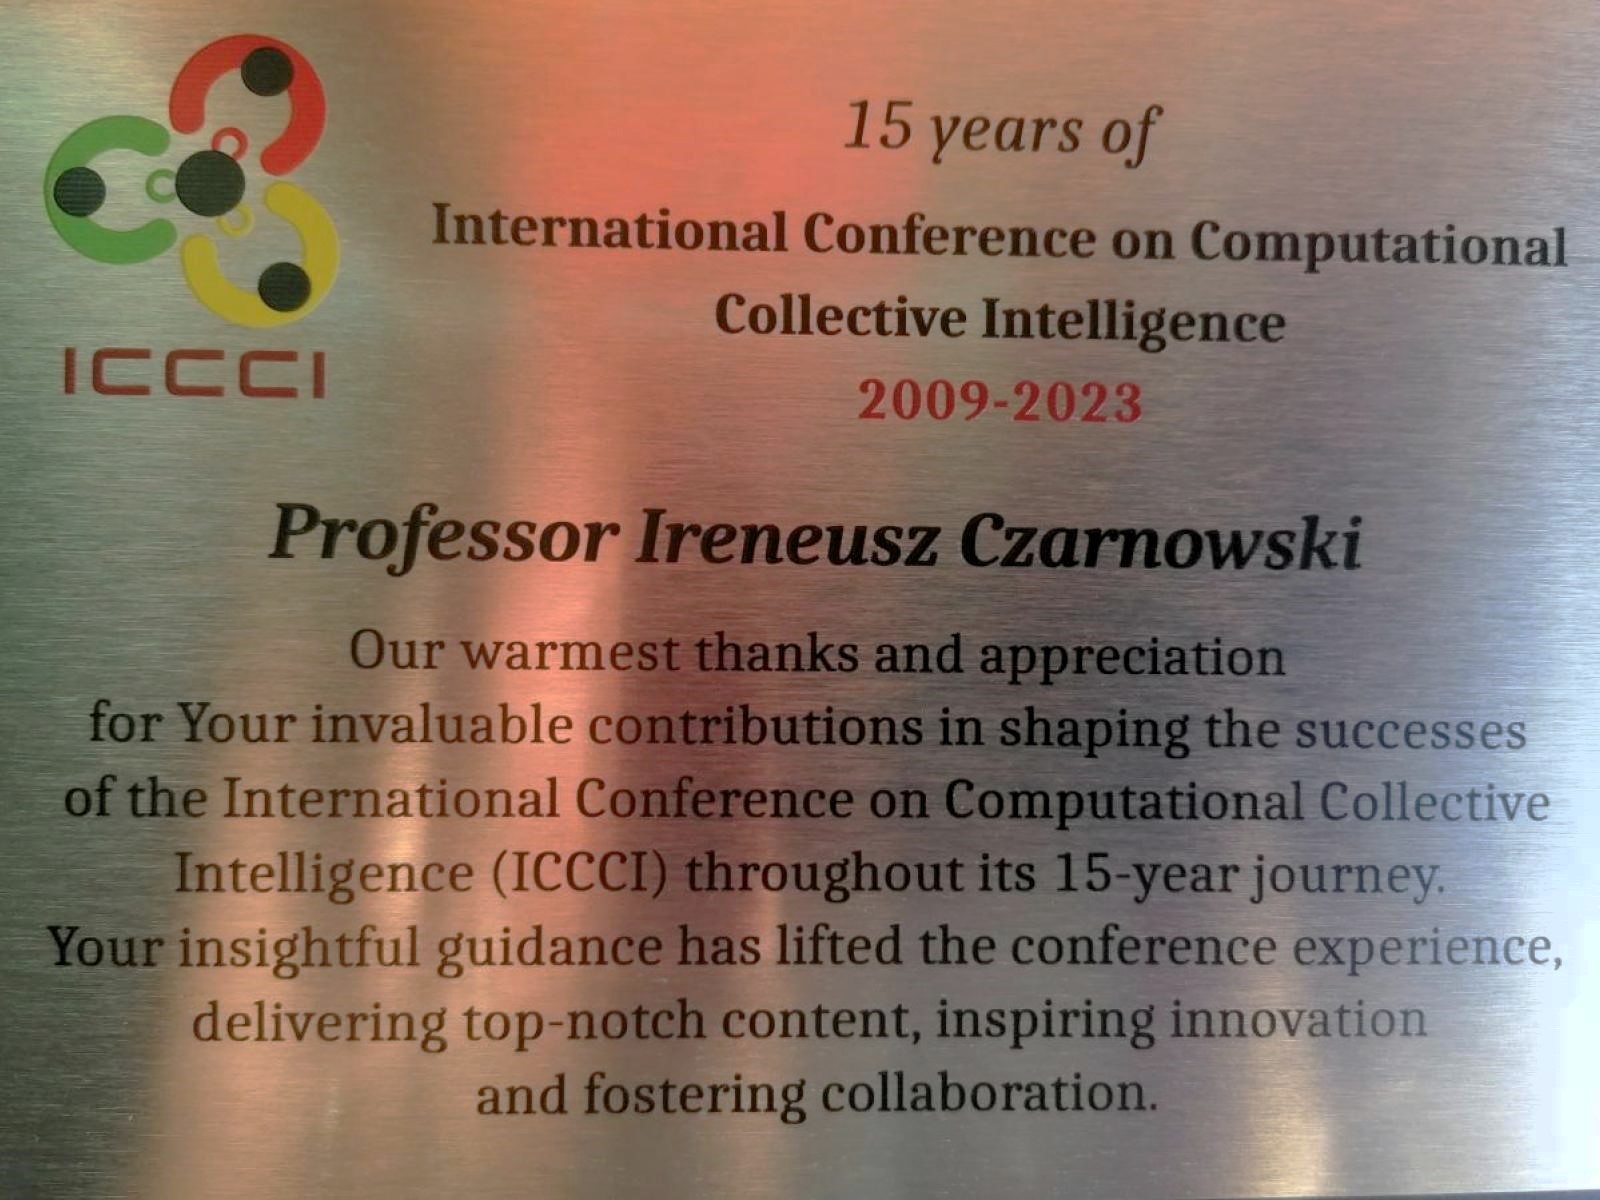 Thanks to Prof. Ireneusz Czarnowski